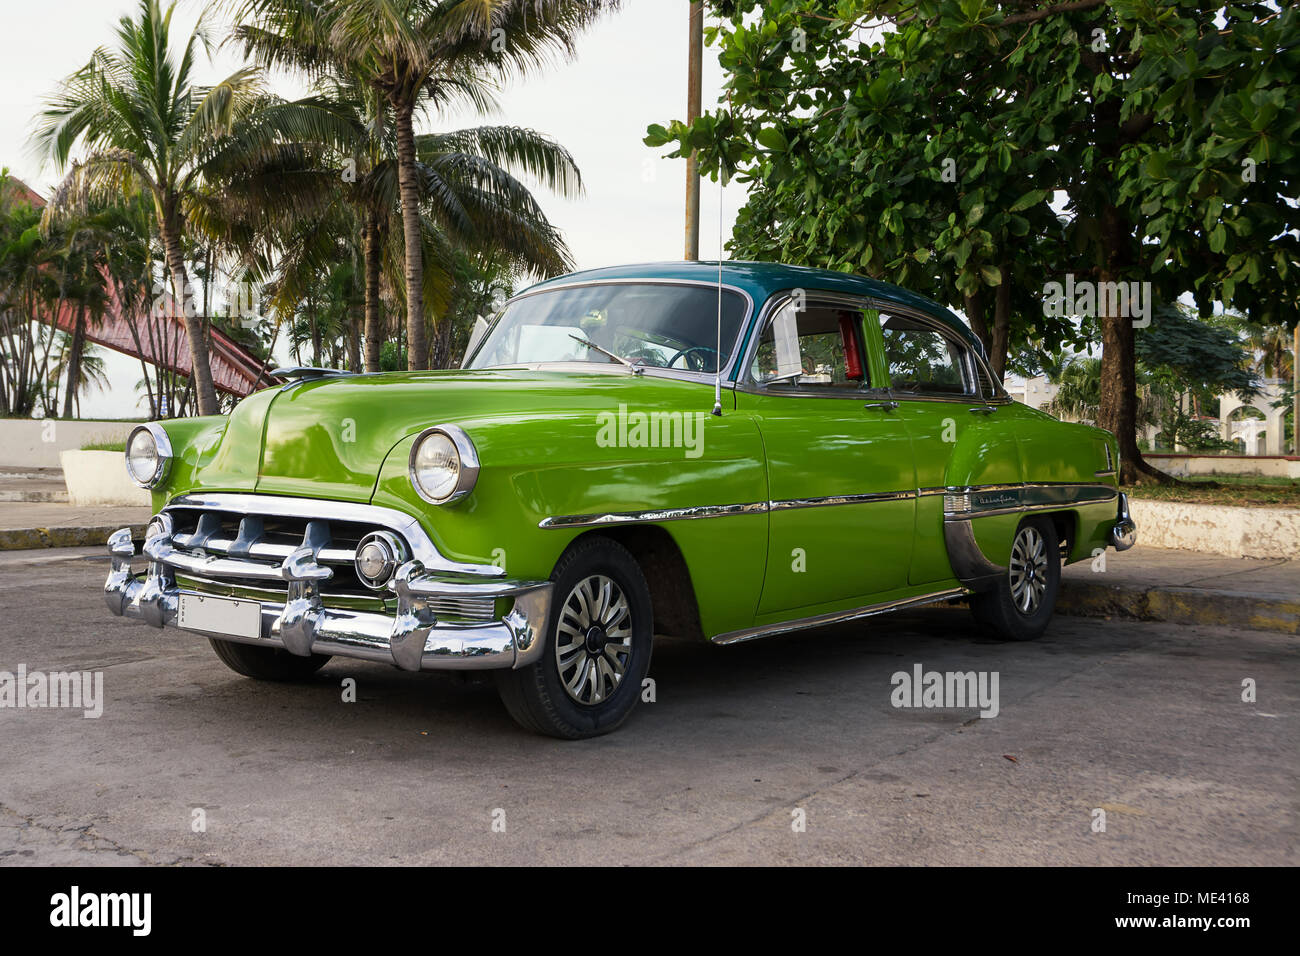 Cienfuegos, Cuba - December 7, 2017: Old green American car parked in Cienfuegos Stock Photo